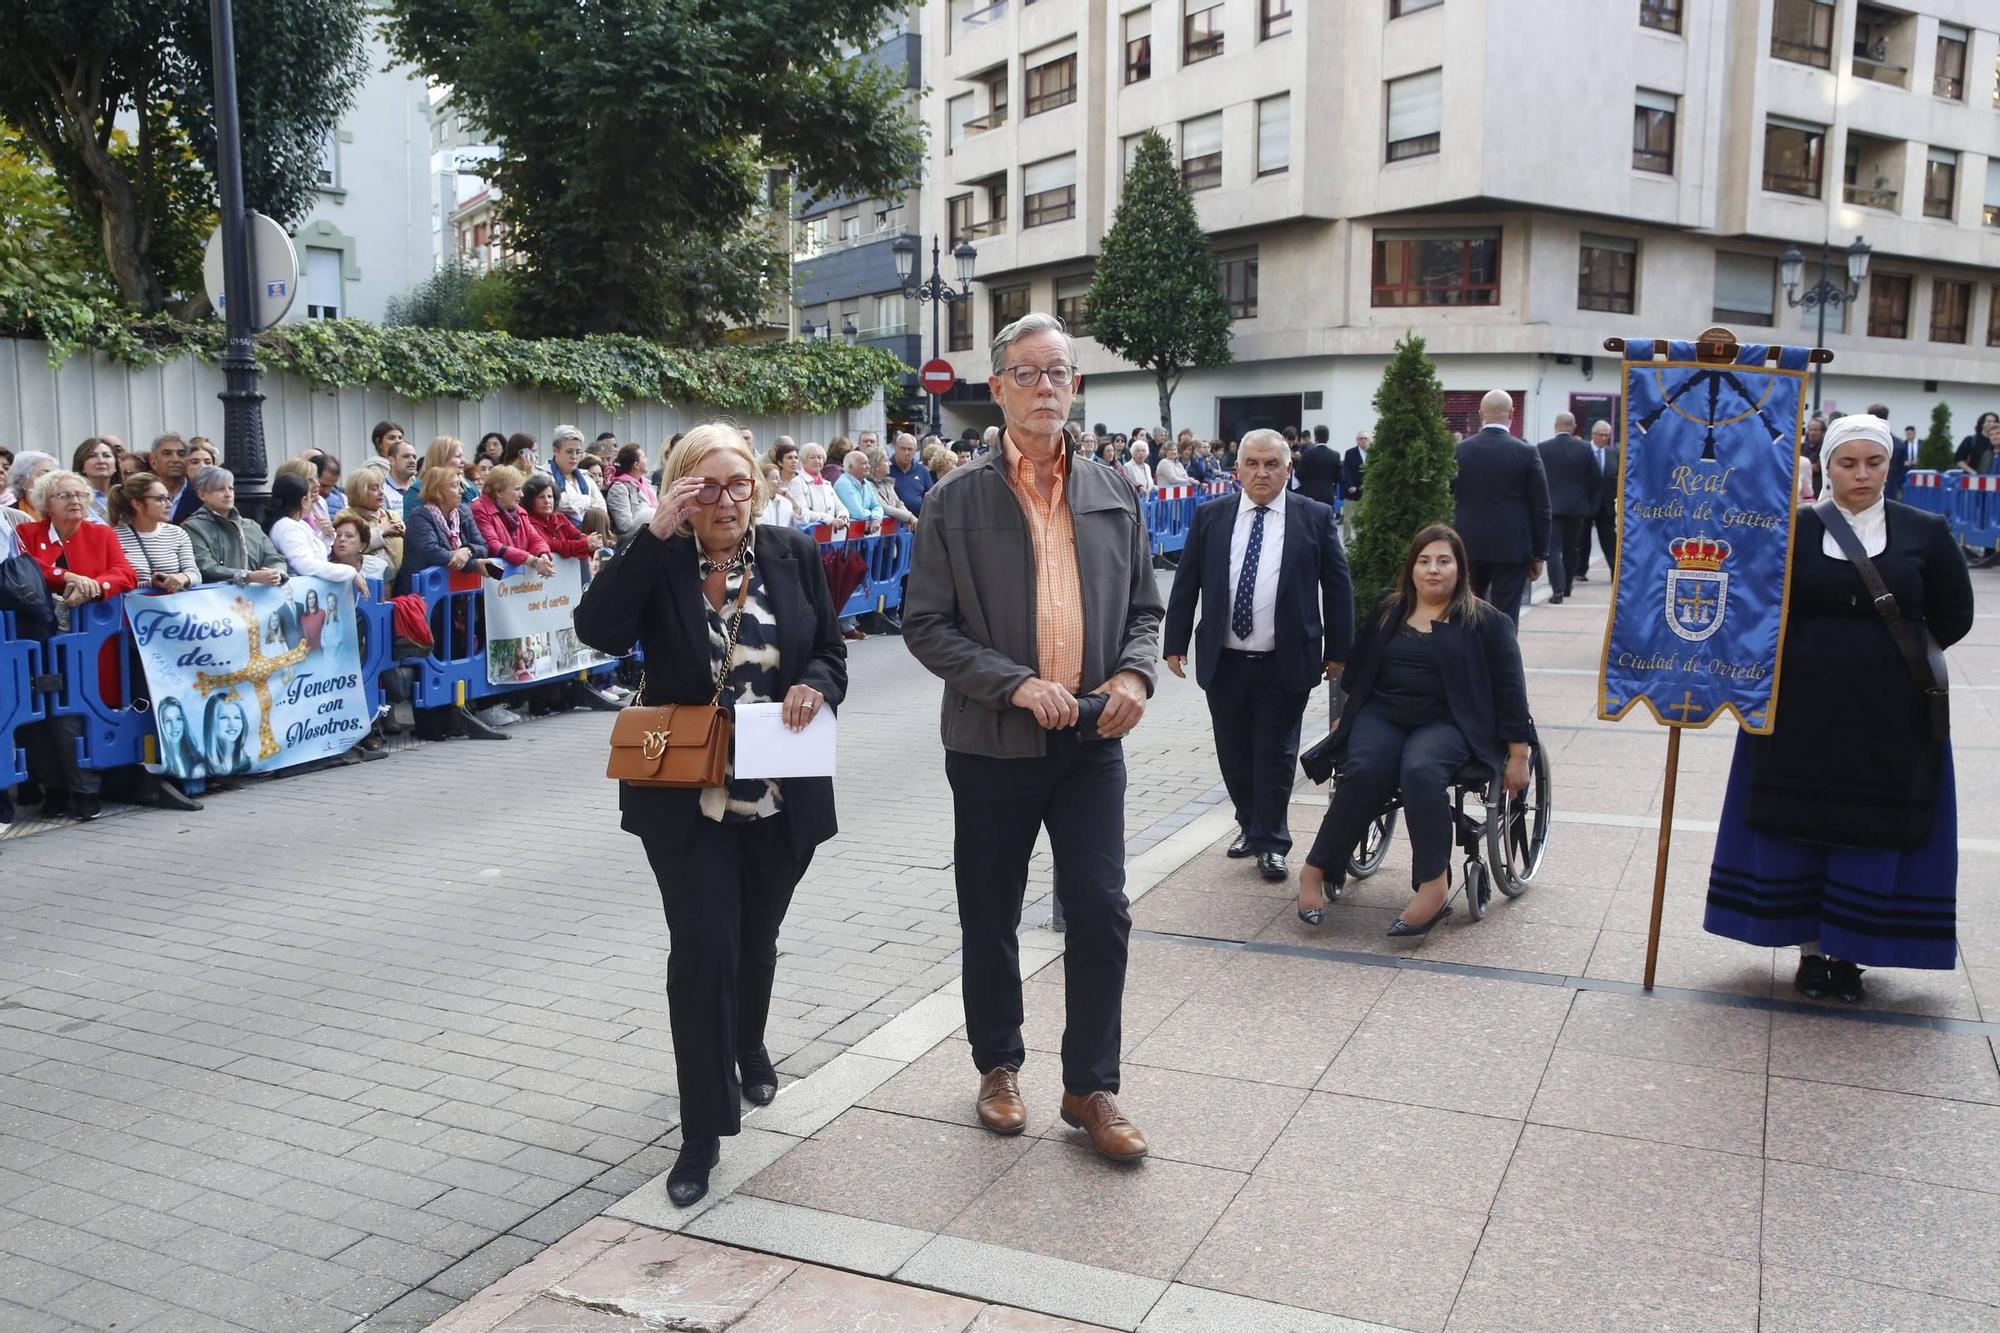 EN IMÁGENES: La Familia Real asiste en Oviedo al concierto de los premios "Princesa de Asturias"